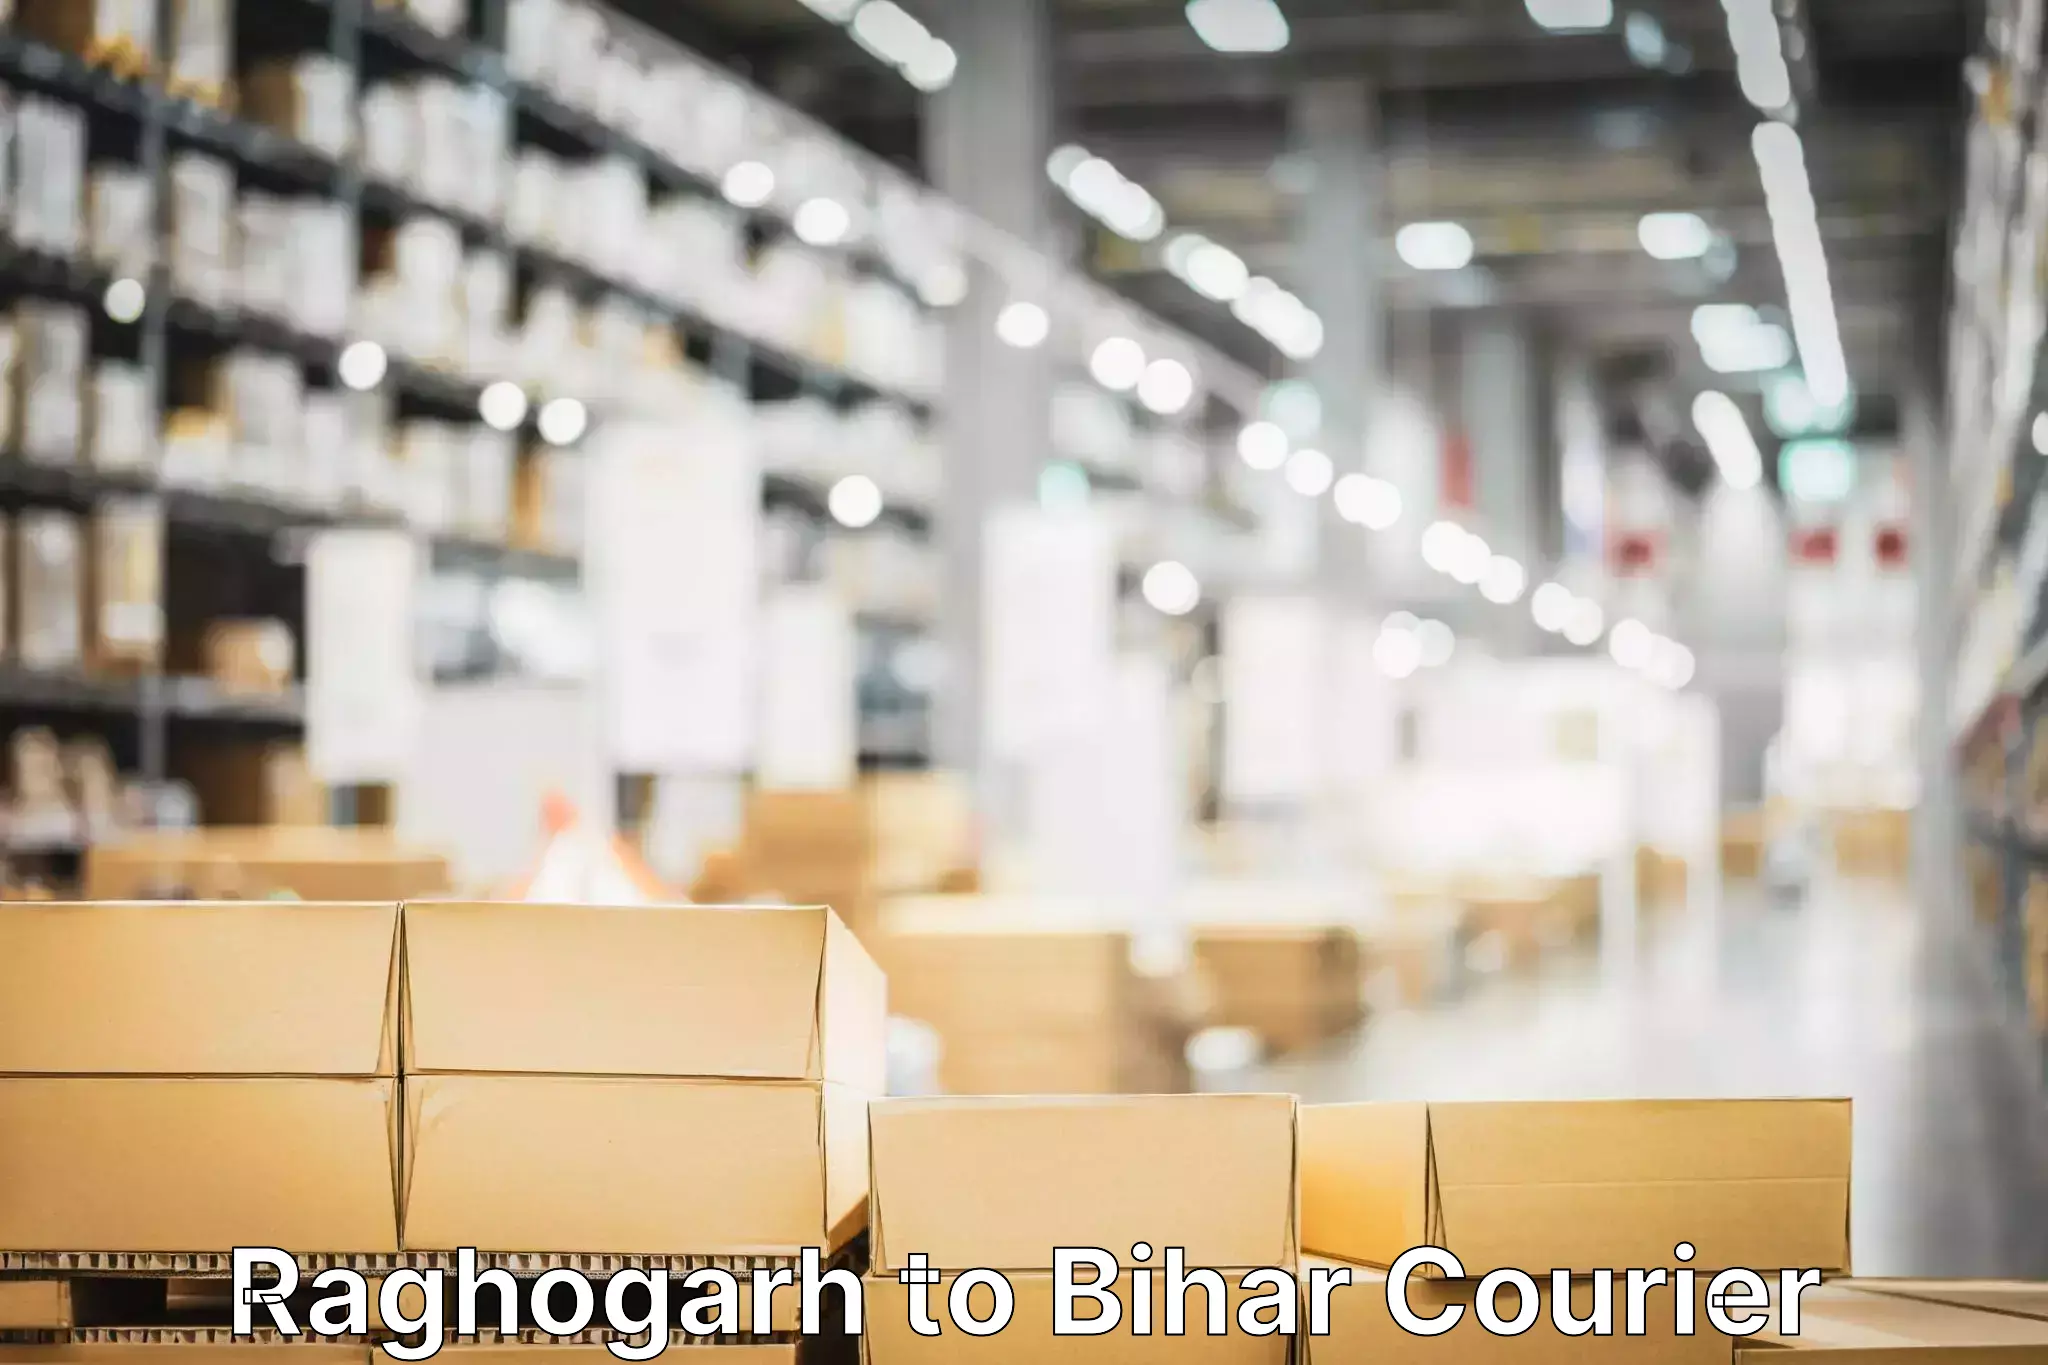 24/7 courier service Raghogarh to Bihar